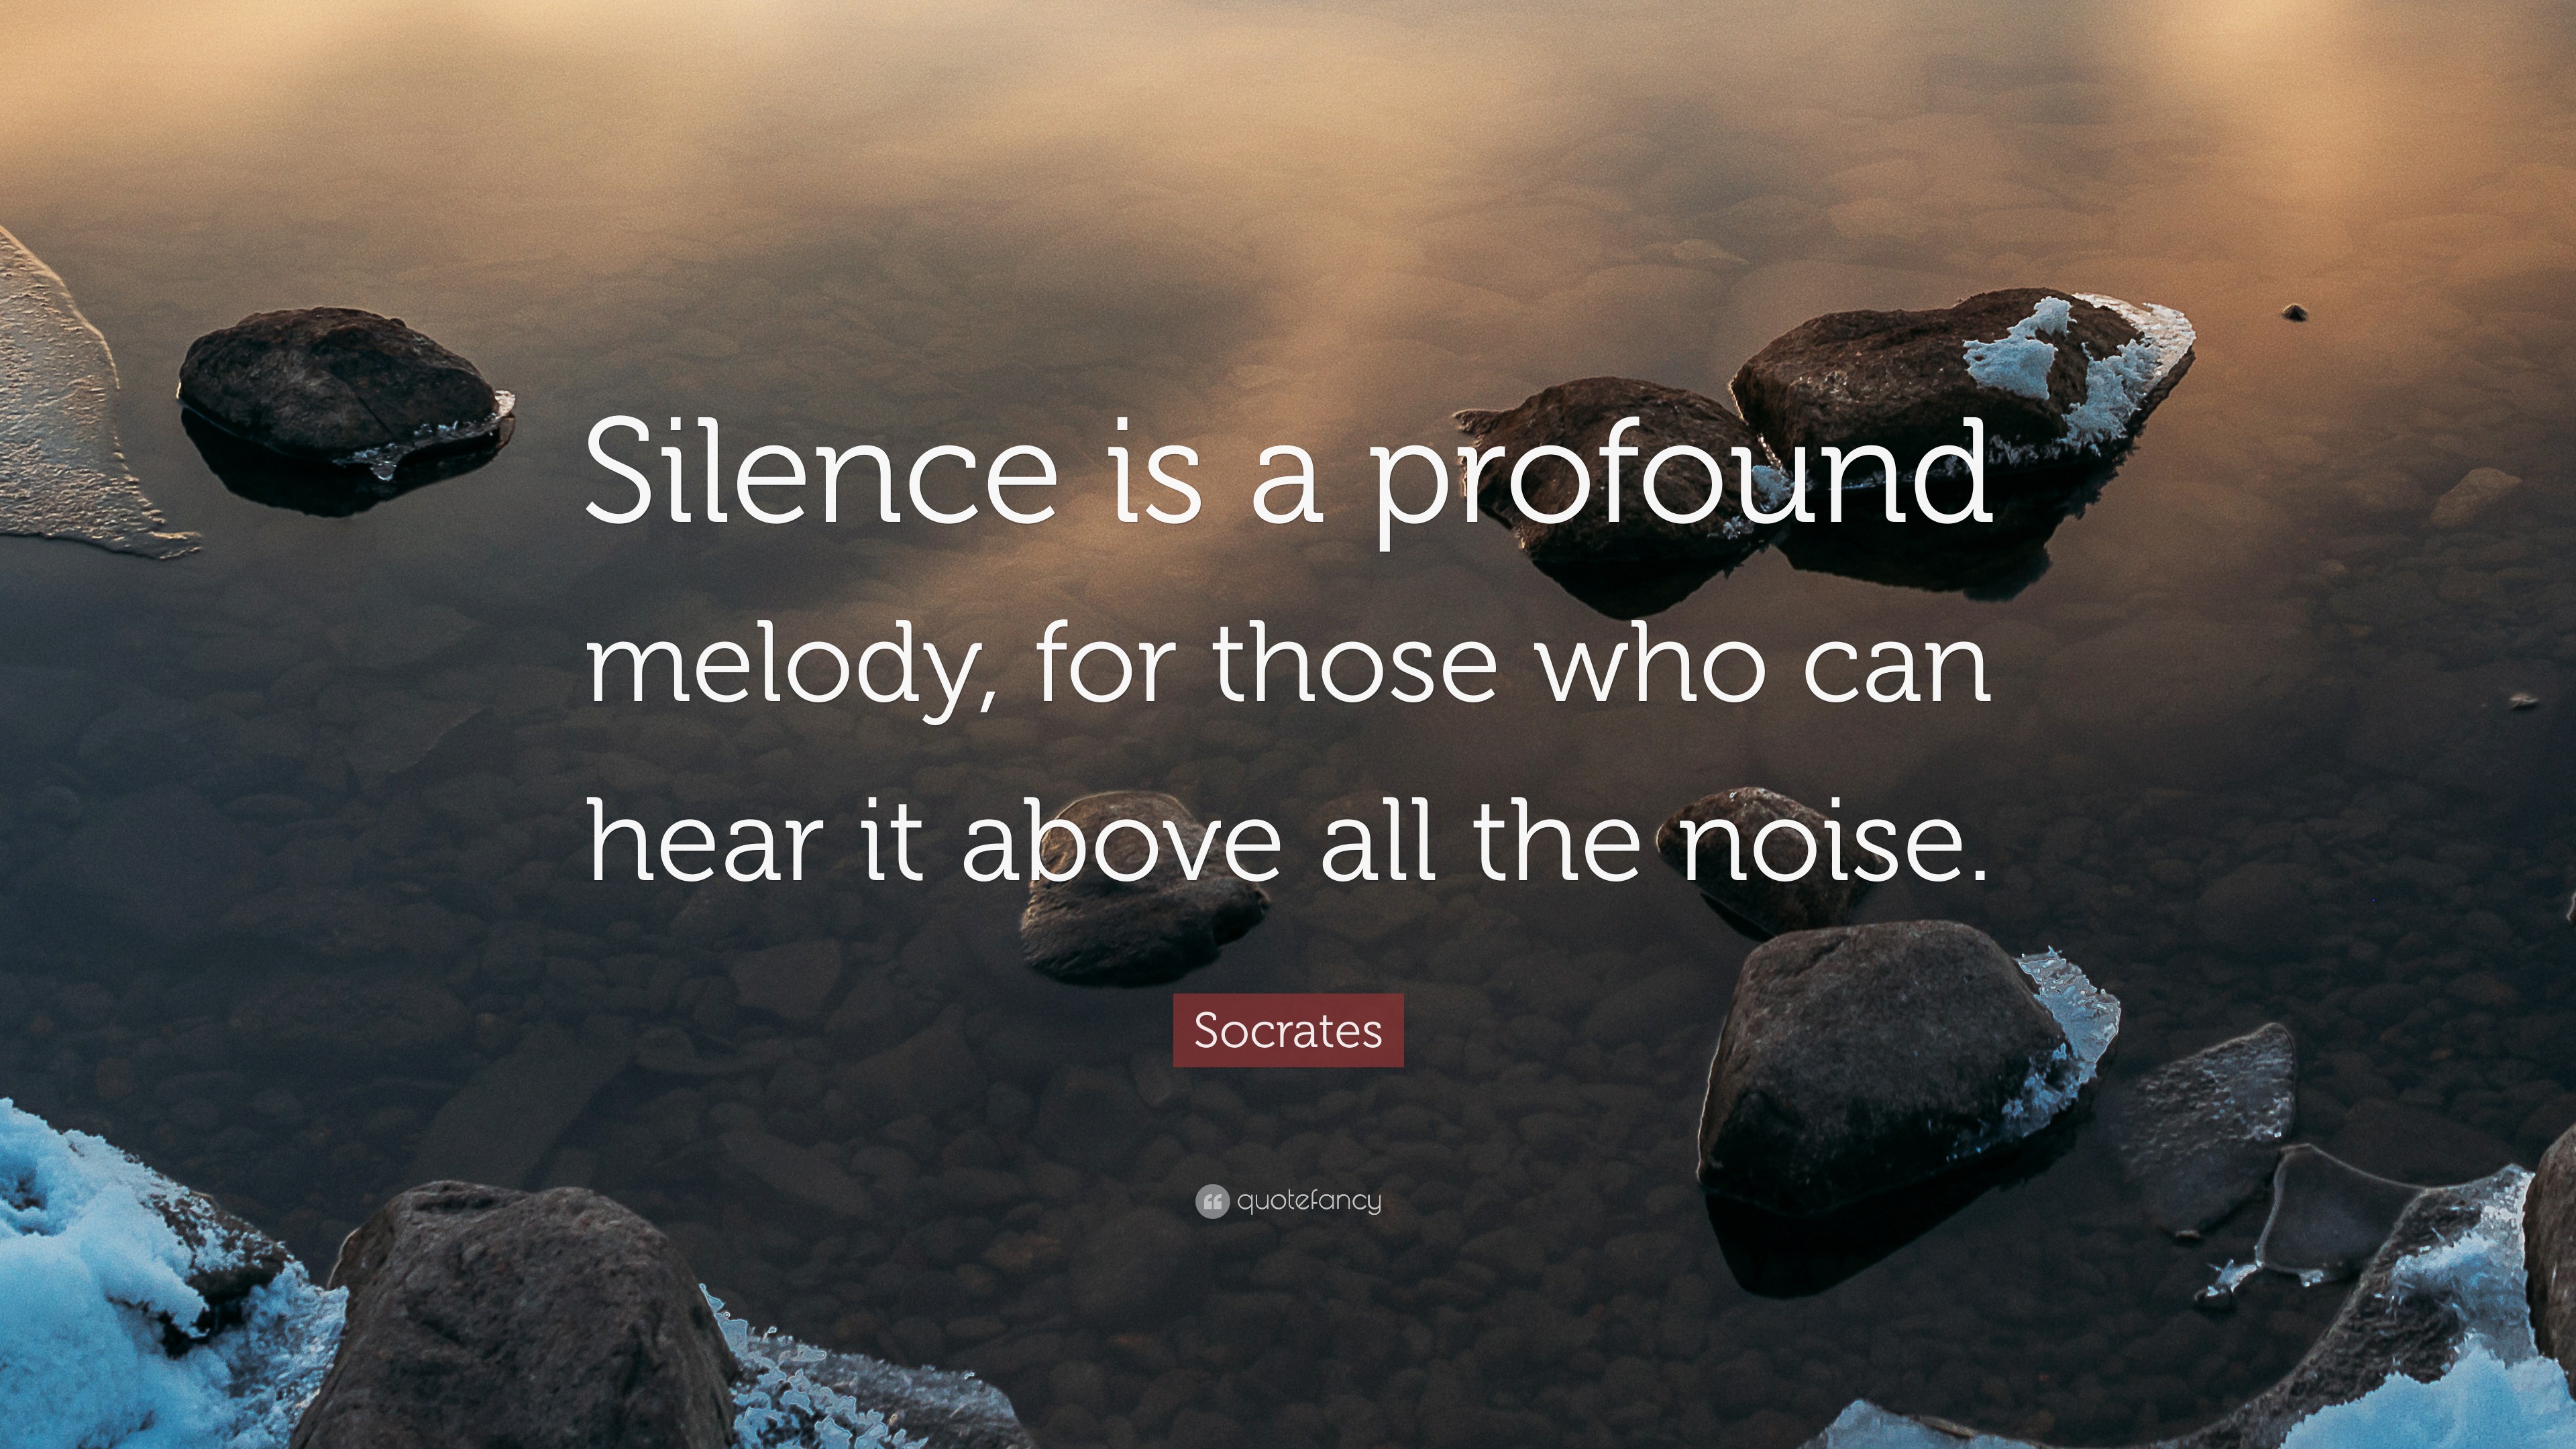 ¿Puede el silencio ser profundo?